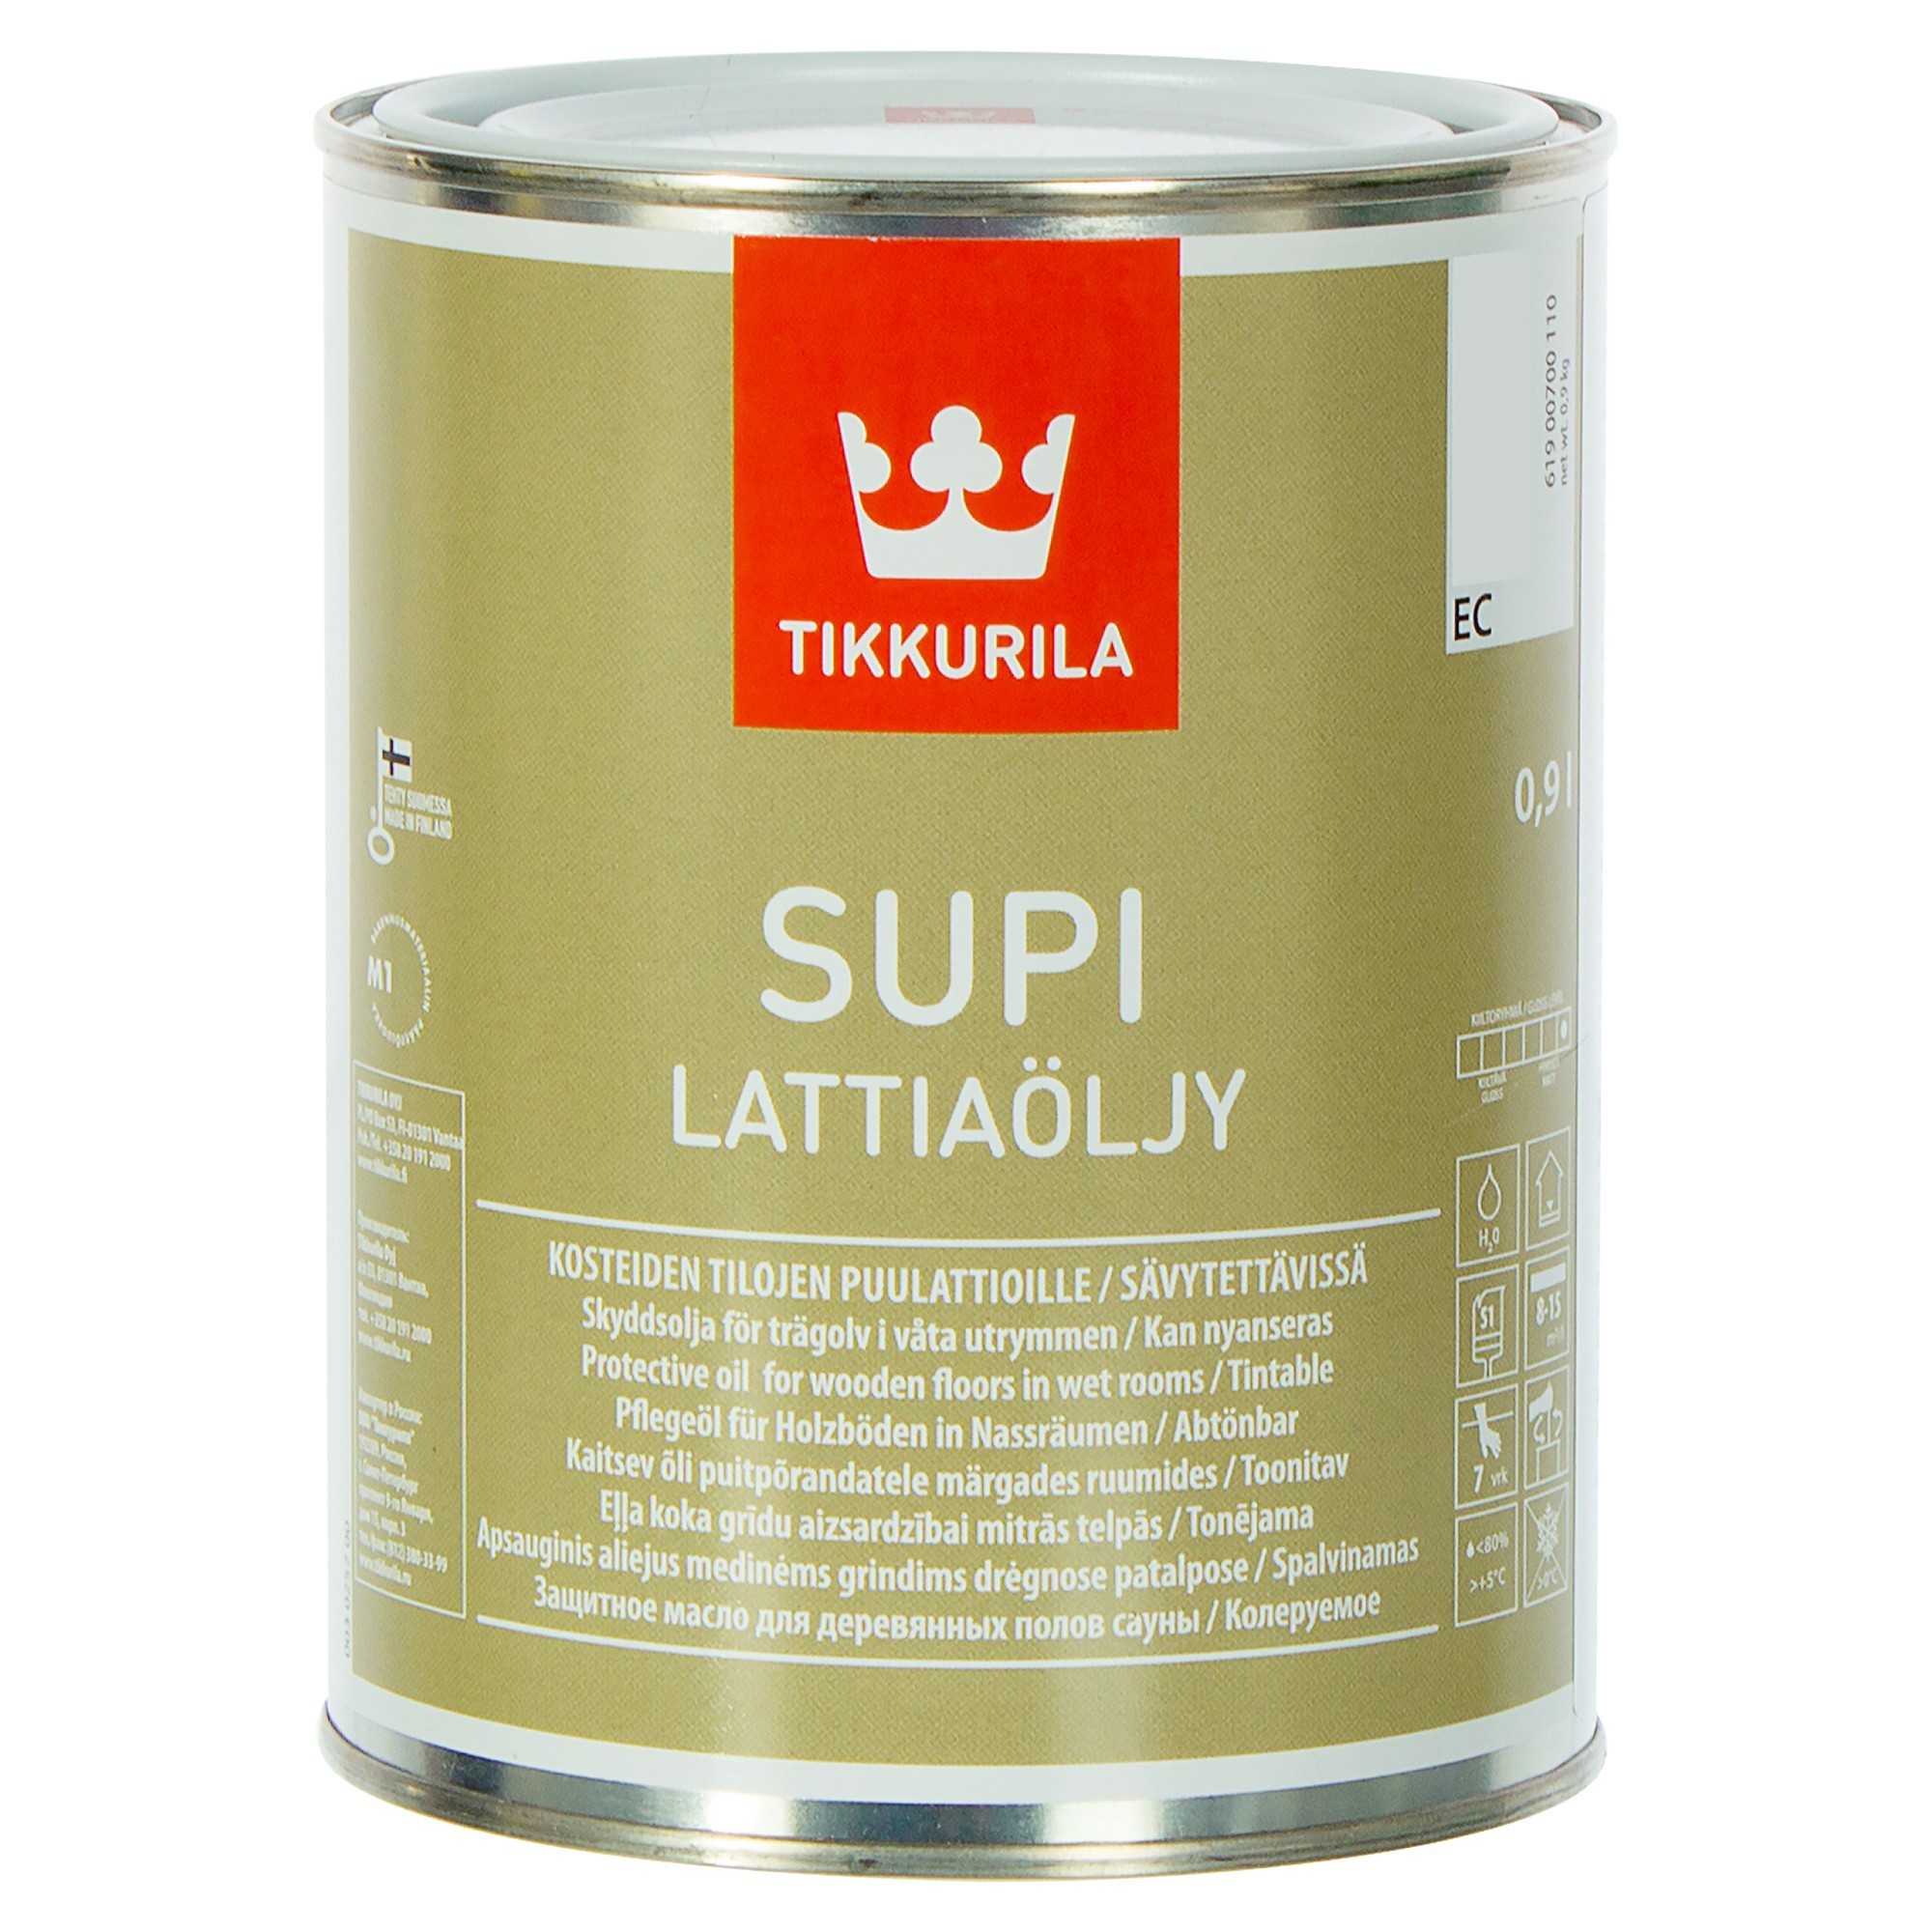 Масло для дерева мерлен. Масло для пола Tikkurila Supi LATTIAOLJY. Tikkurila Supi LATTIAOLJY. Tikkurila Supi для пола в бане. Тиккурила супи Латиаоли (Supi LATTIAOLJY) масло для пола (0,9л).